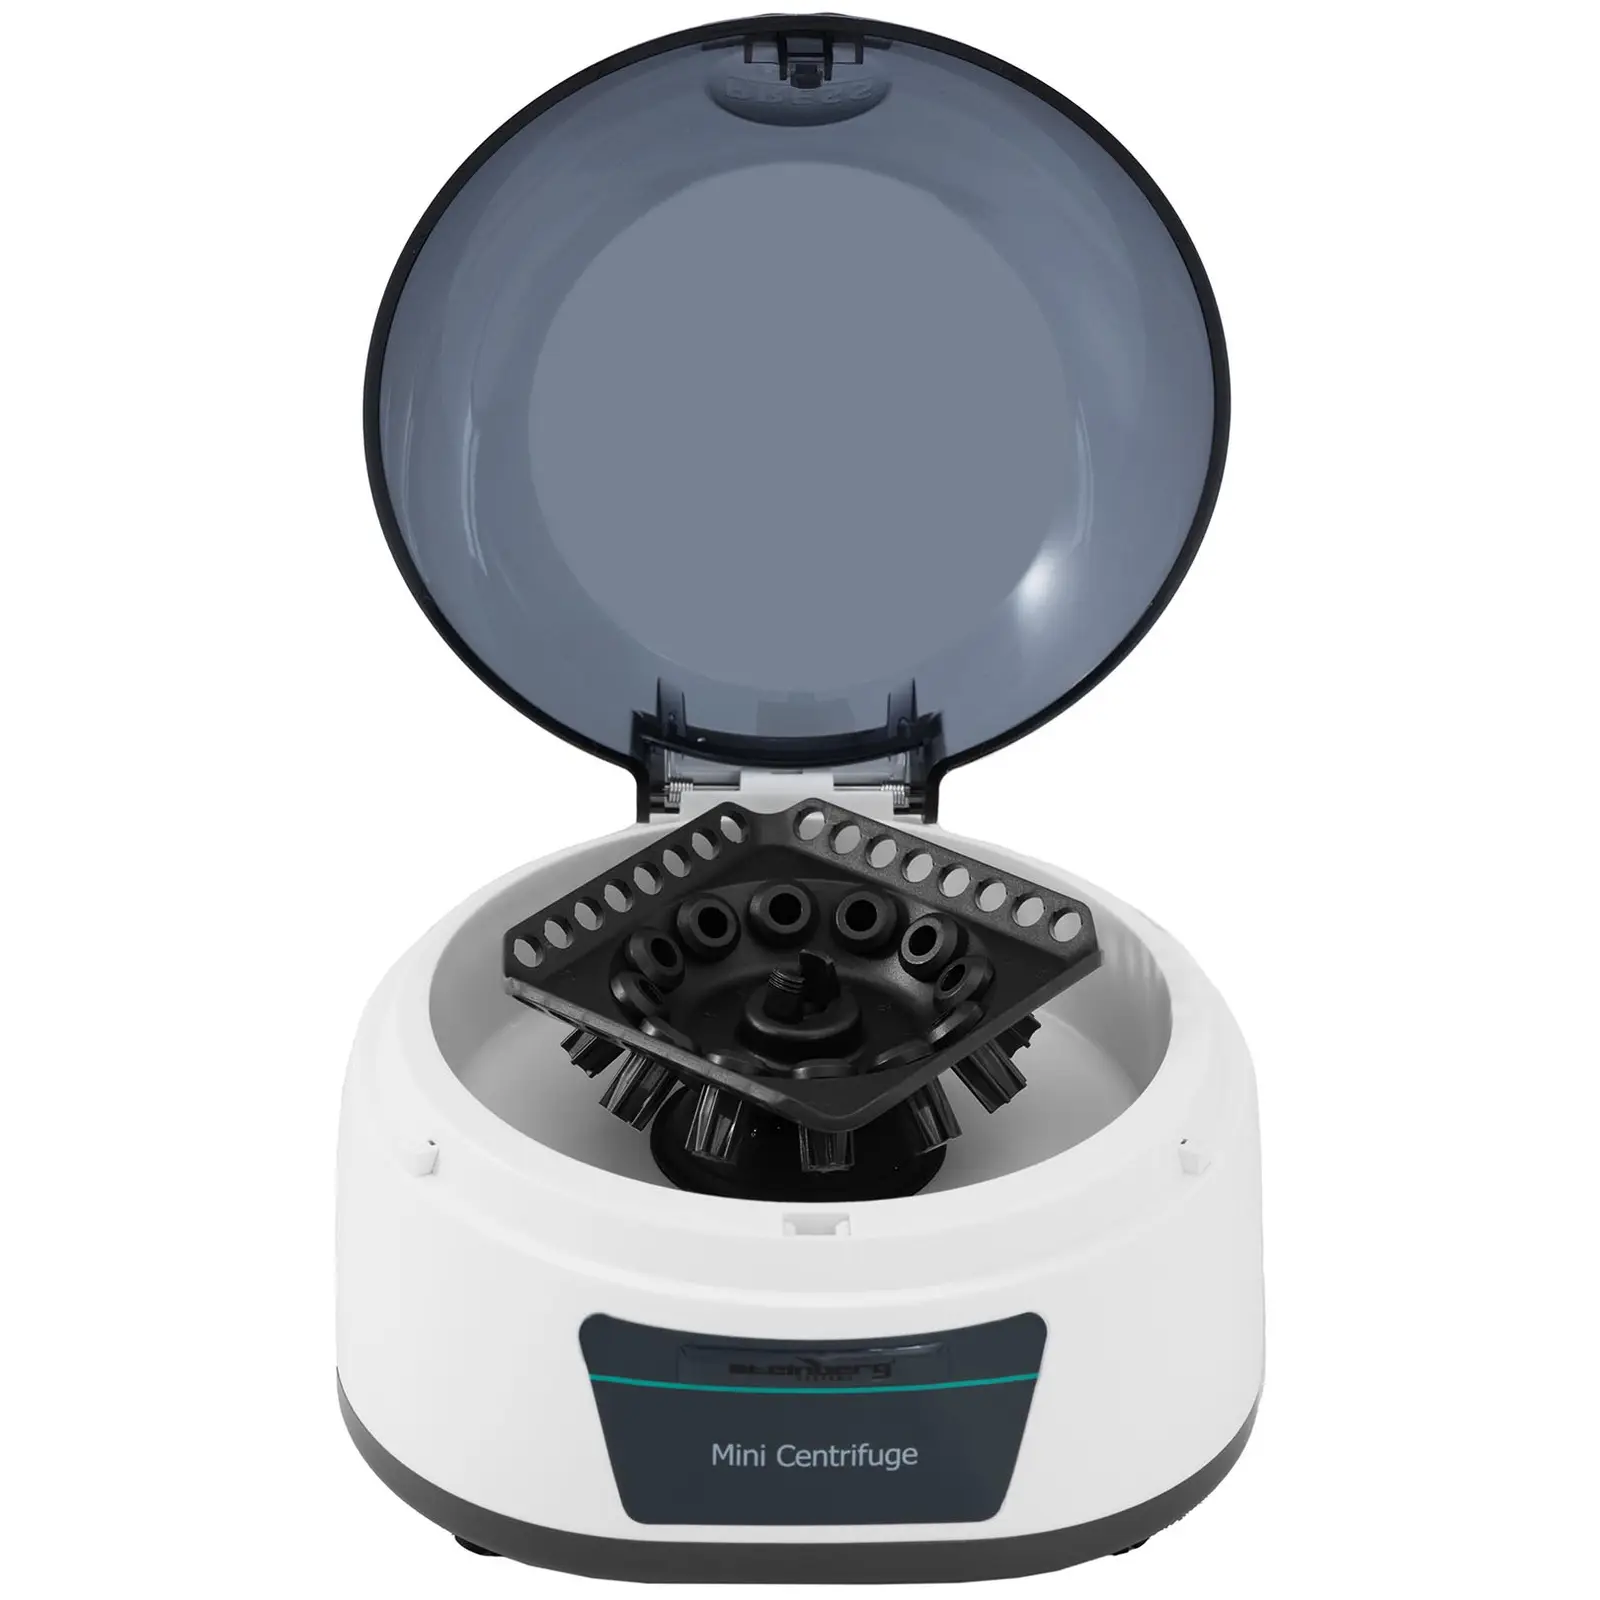 Stolní centrifuga - rotor 2 v 1 - 4000 otáček za minutu - pro 12 zkumavky / 4 PCR proužky - RZB 805 xg